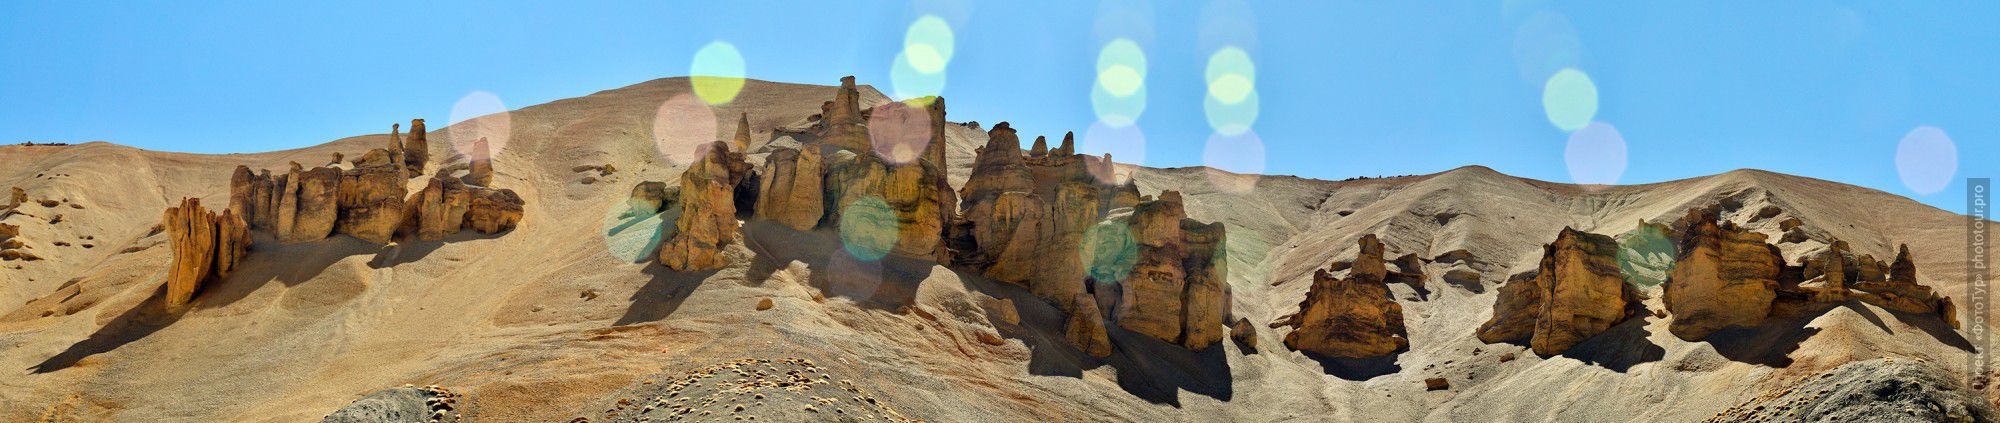 Каменные Истуканы по левому борту Лех-Манальского Шоссе. Фототур в Долину Спити из Леха,  Малый Тибет, Индия.